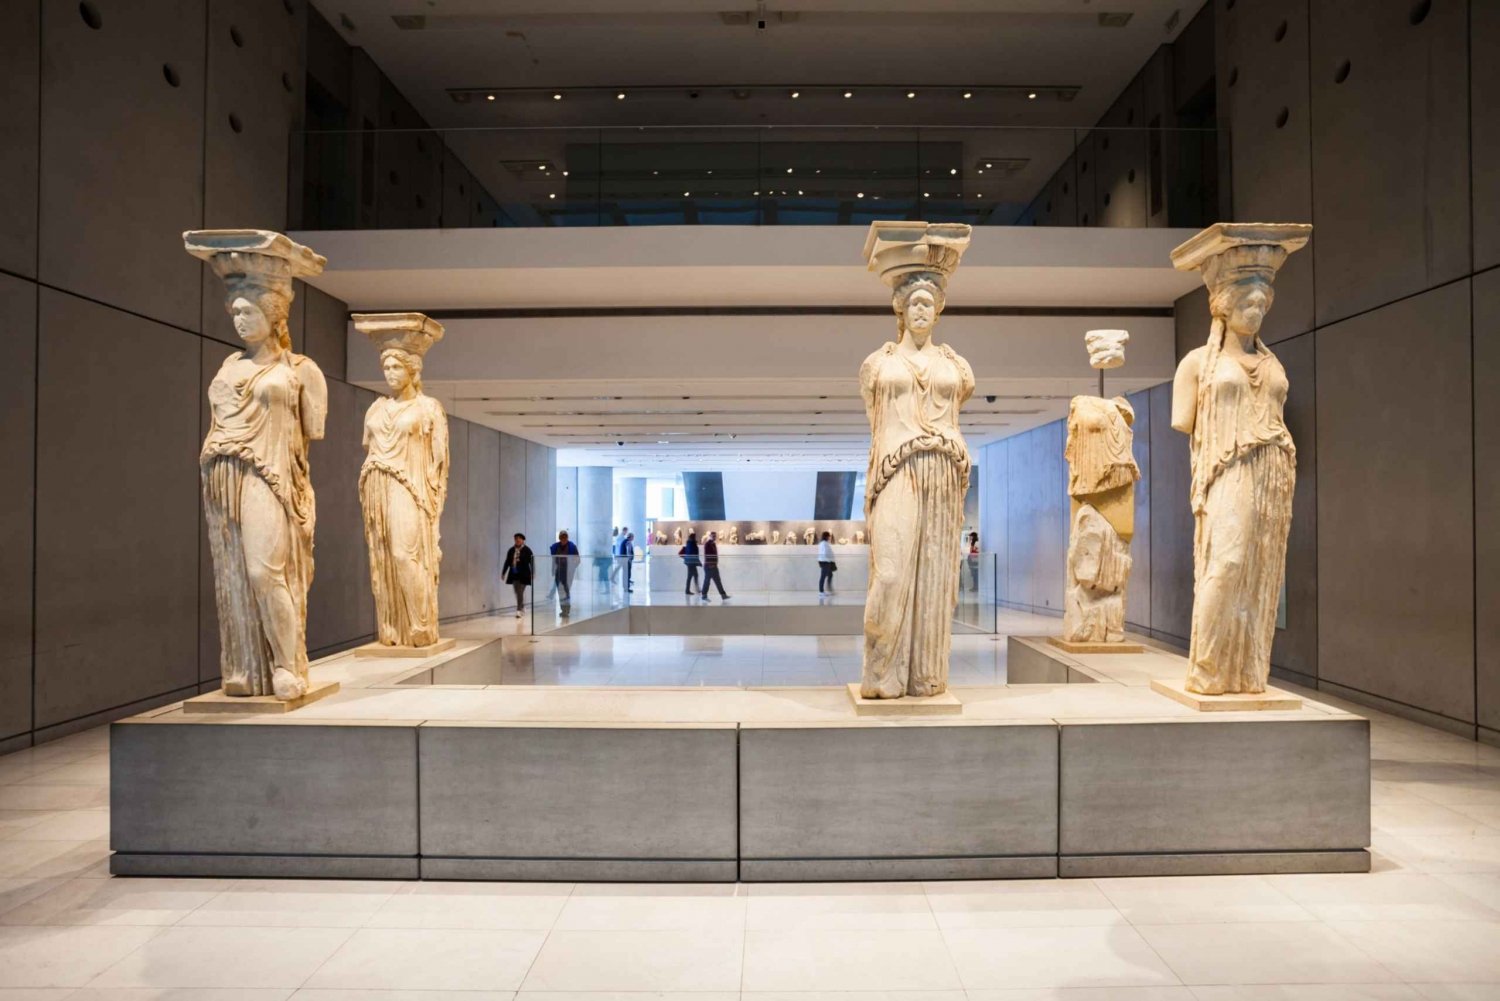 Aten: Biljett till Akropolismuseet med valfri audioguide